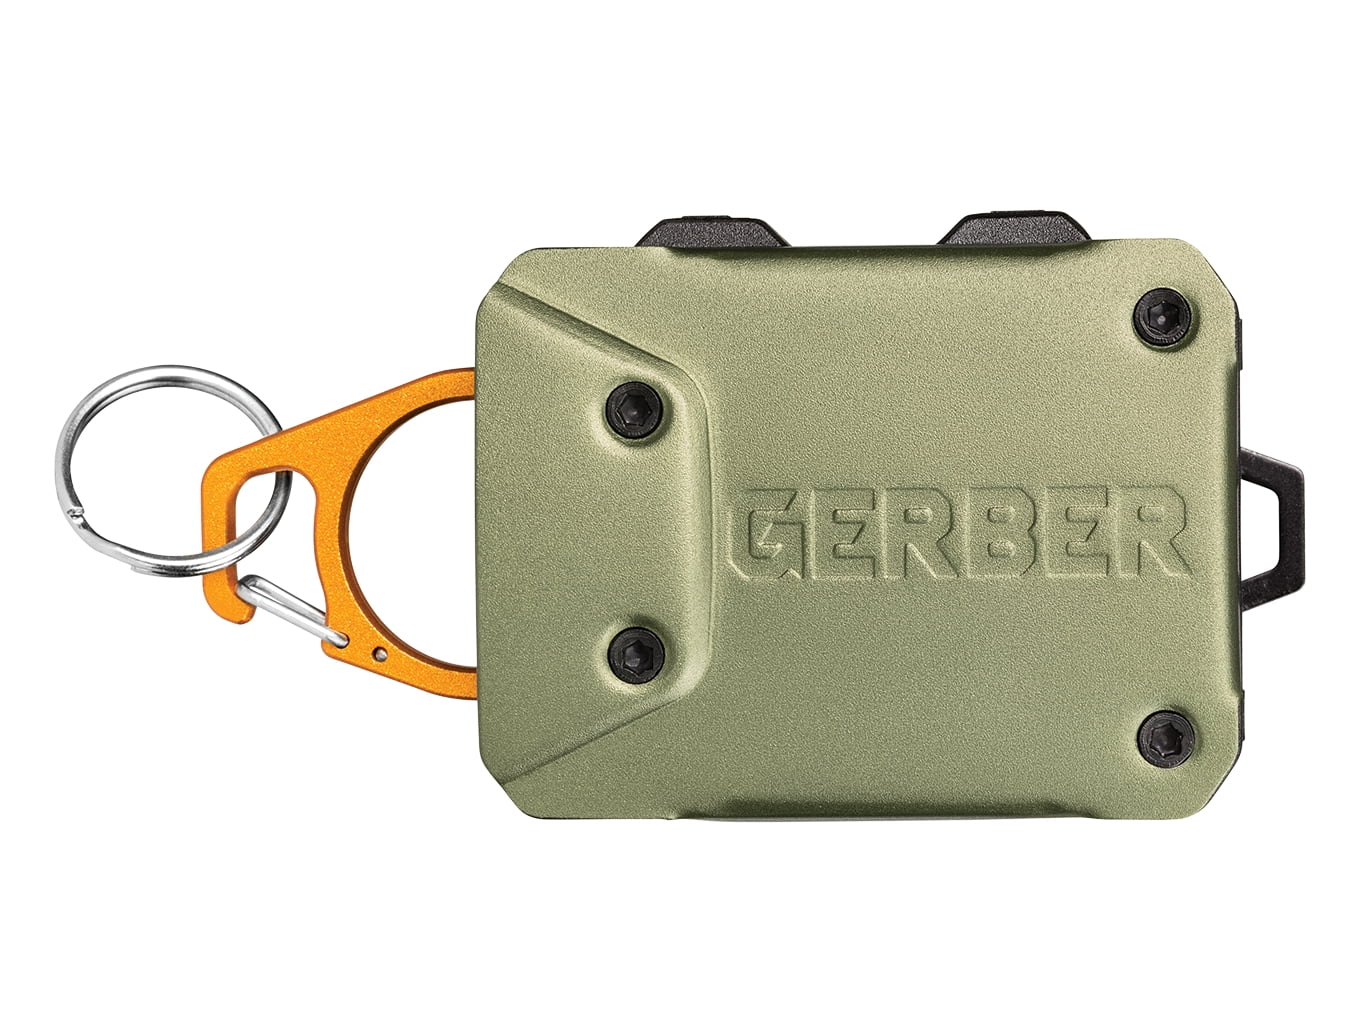 Gerber Defender Large Tether, Green and Orange Kuwait